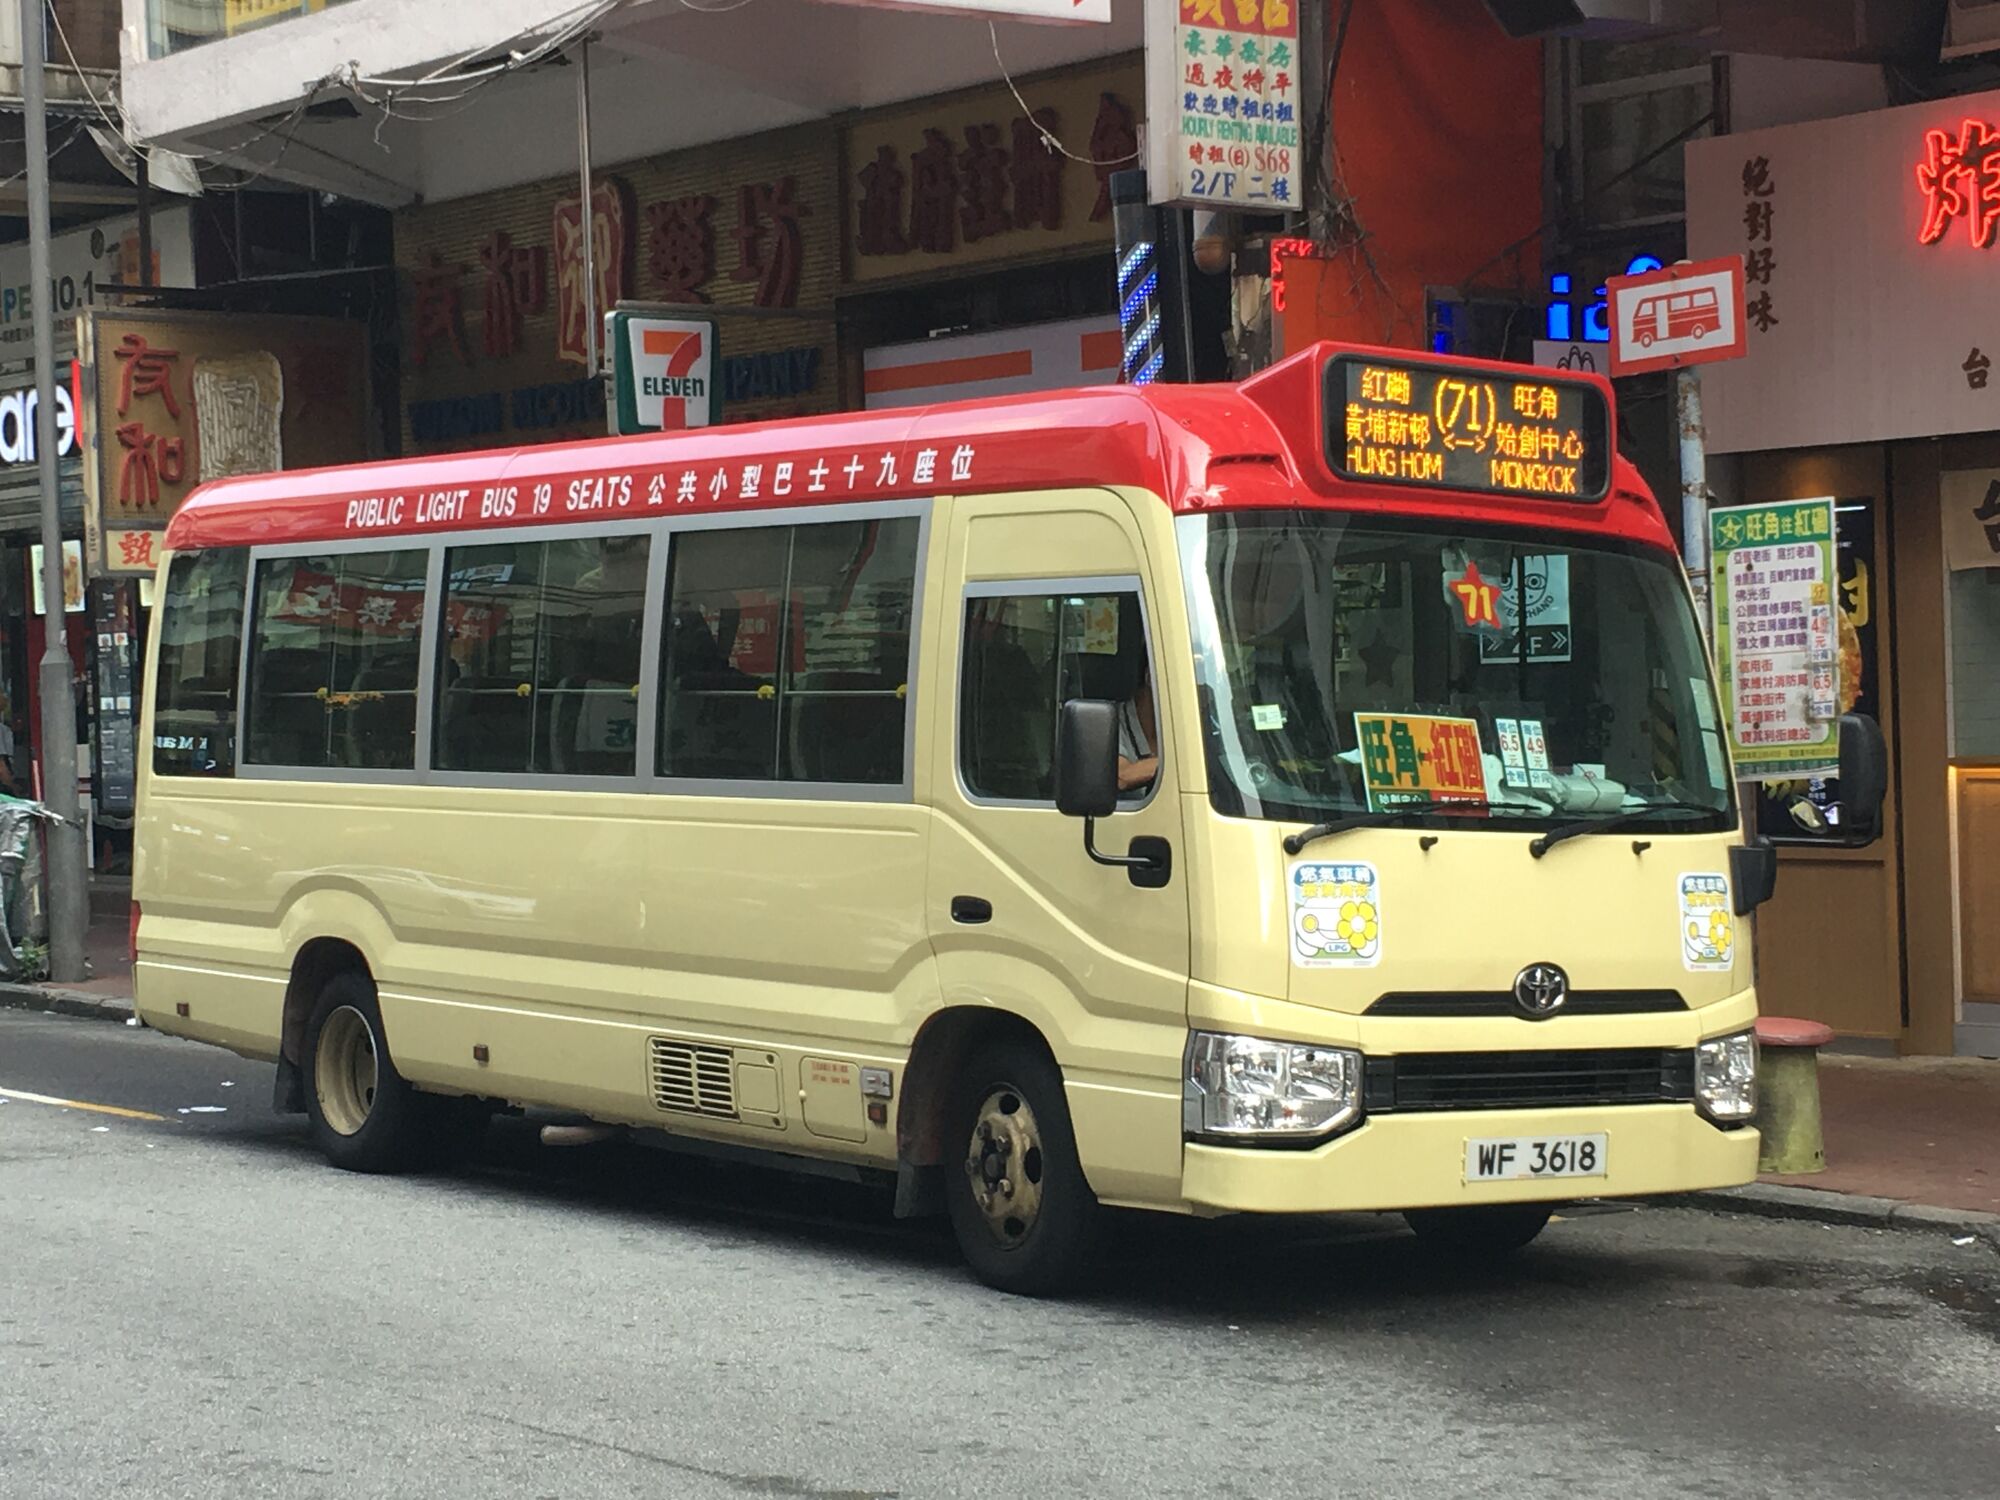 華明 70K - 巴士攝影作品貼圖區 (B3) - hkitalk.net 香港交通資訊網 - Powered by Discuz!